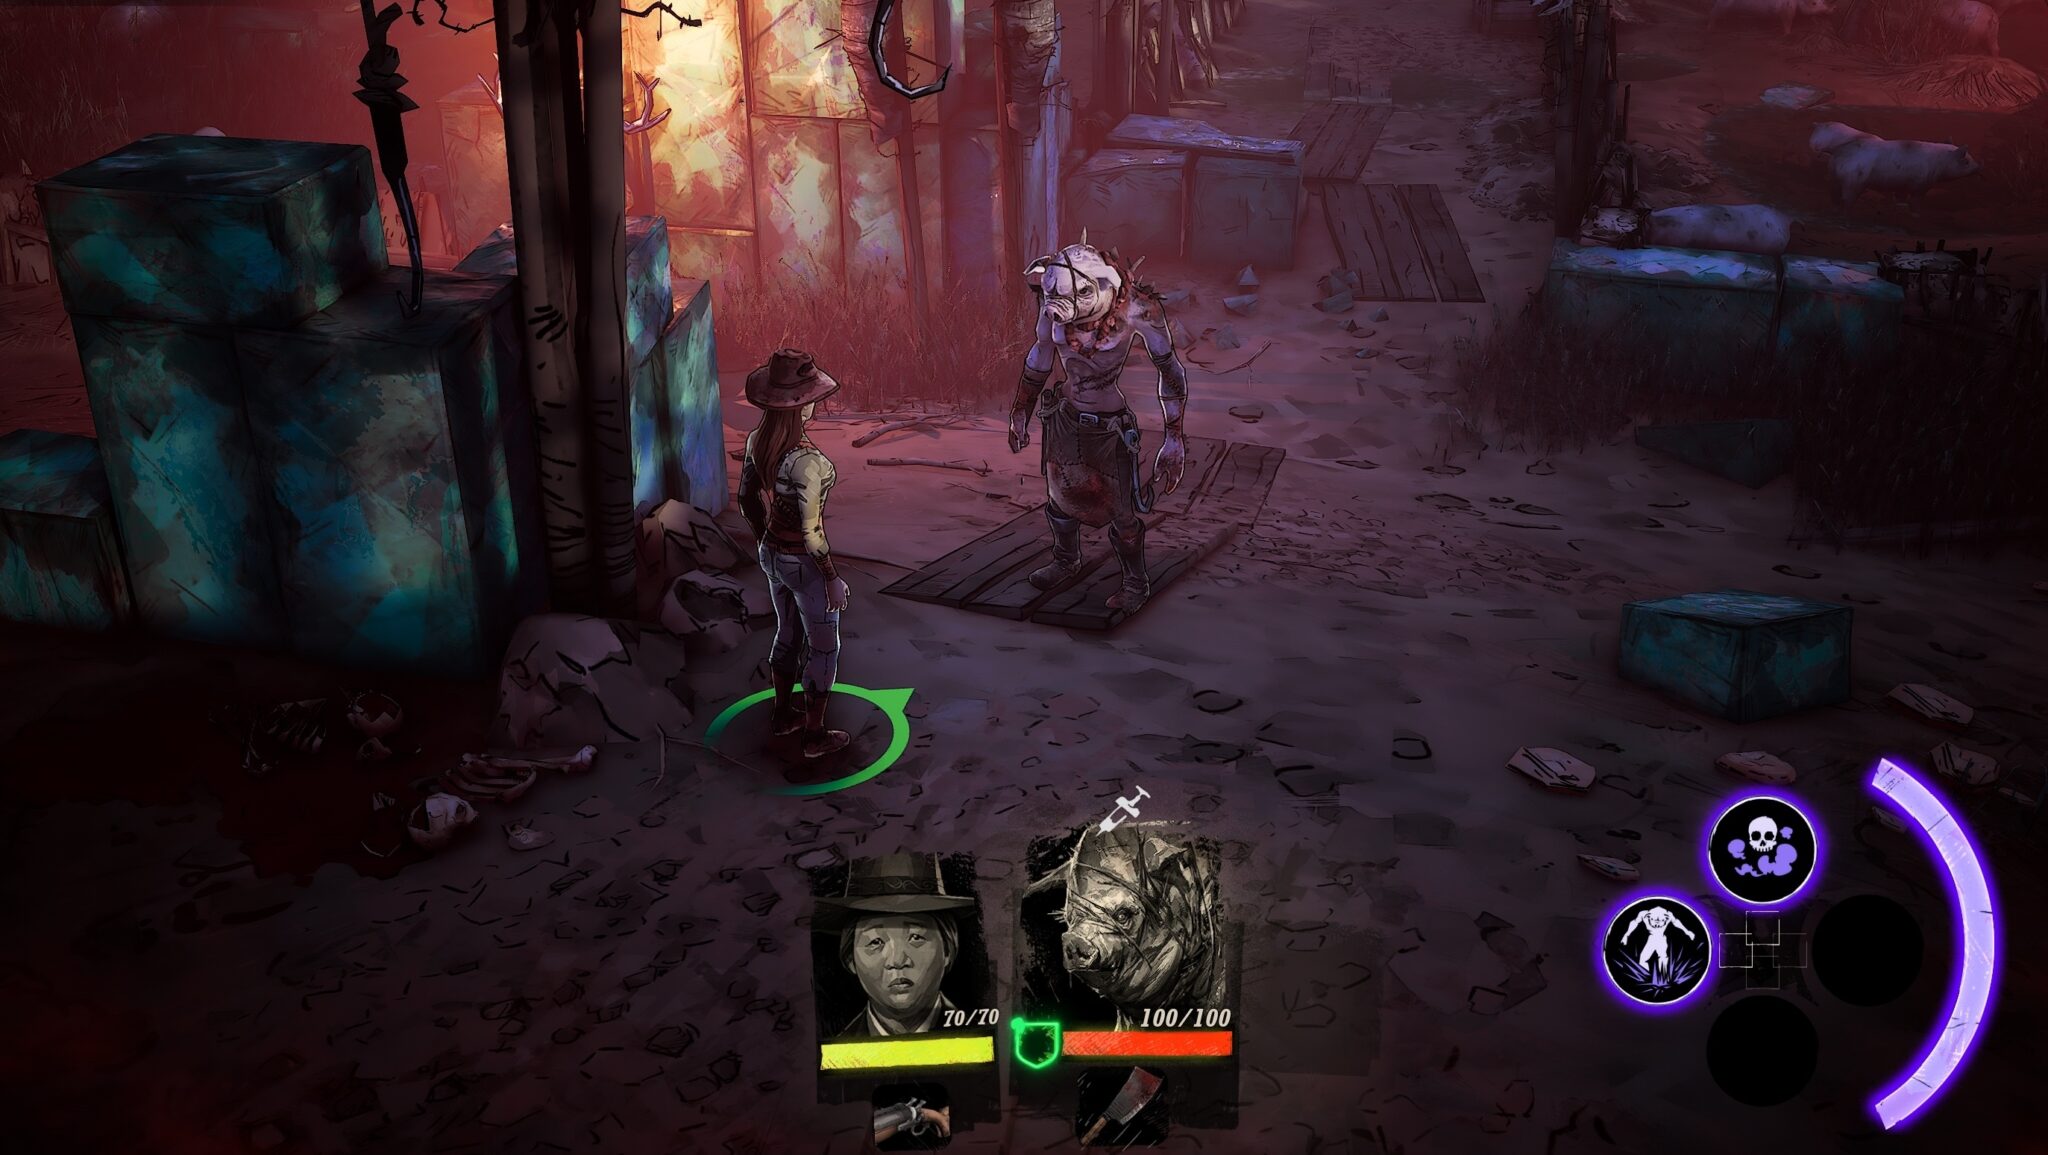 Nel corso del gioco si assumono cinque personaggi completamente diversi uno dopo l'altro. Il maledetto Pigman vuole ricostruire la sua vita da umano.